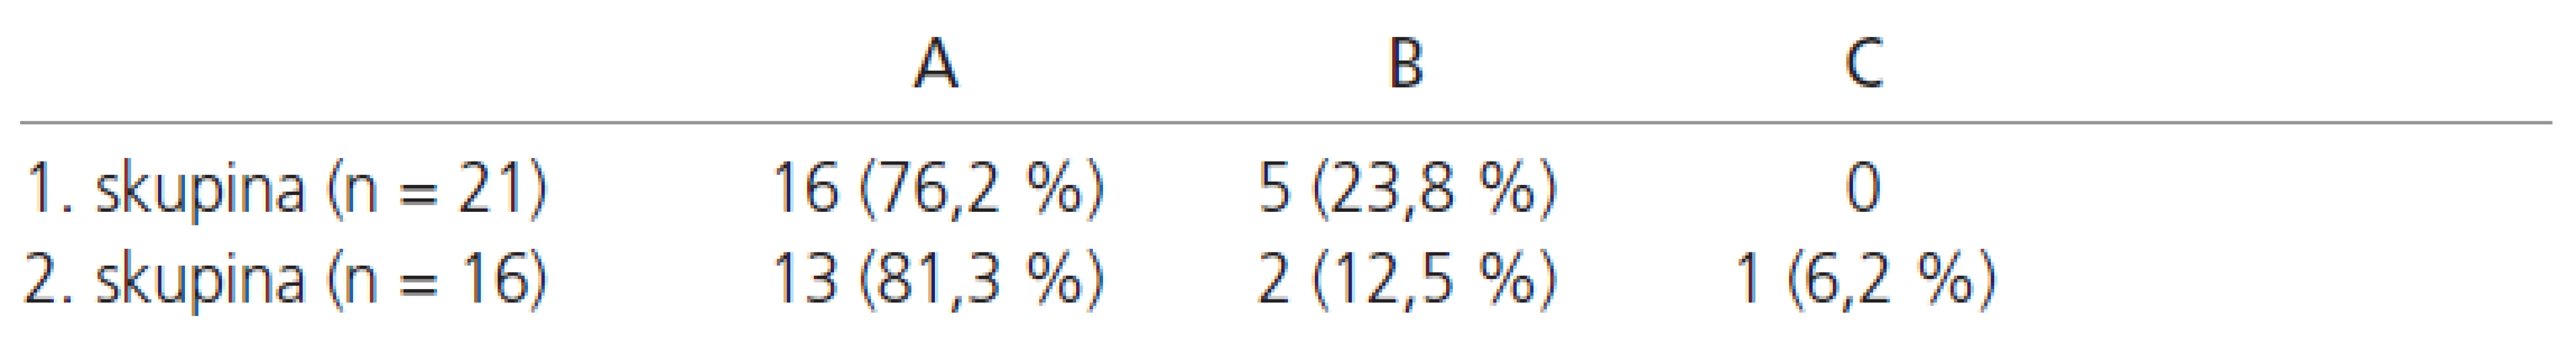 Hodnocení mezitělové fúze průměrně 2 roky po stabilizaci (A – jistá fúze, B – pravděpodobná fúze, C – pseudoartróza).